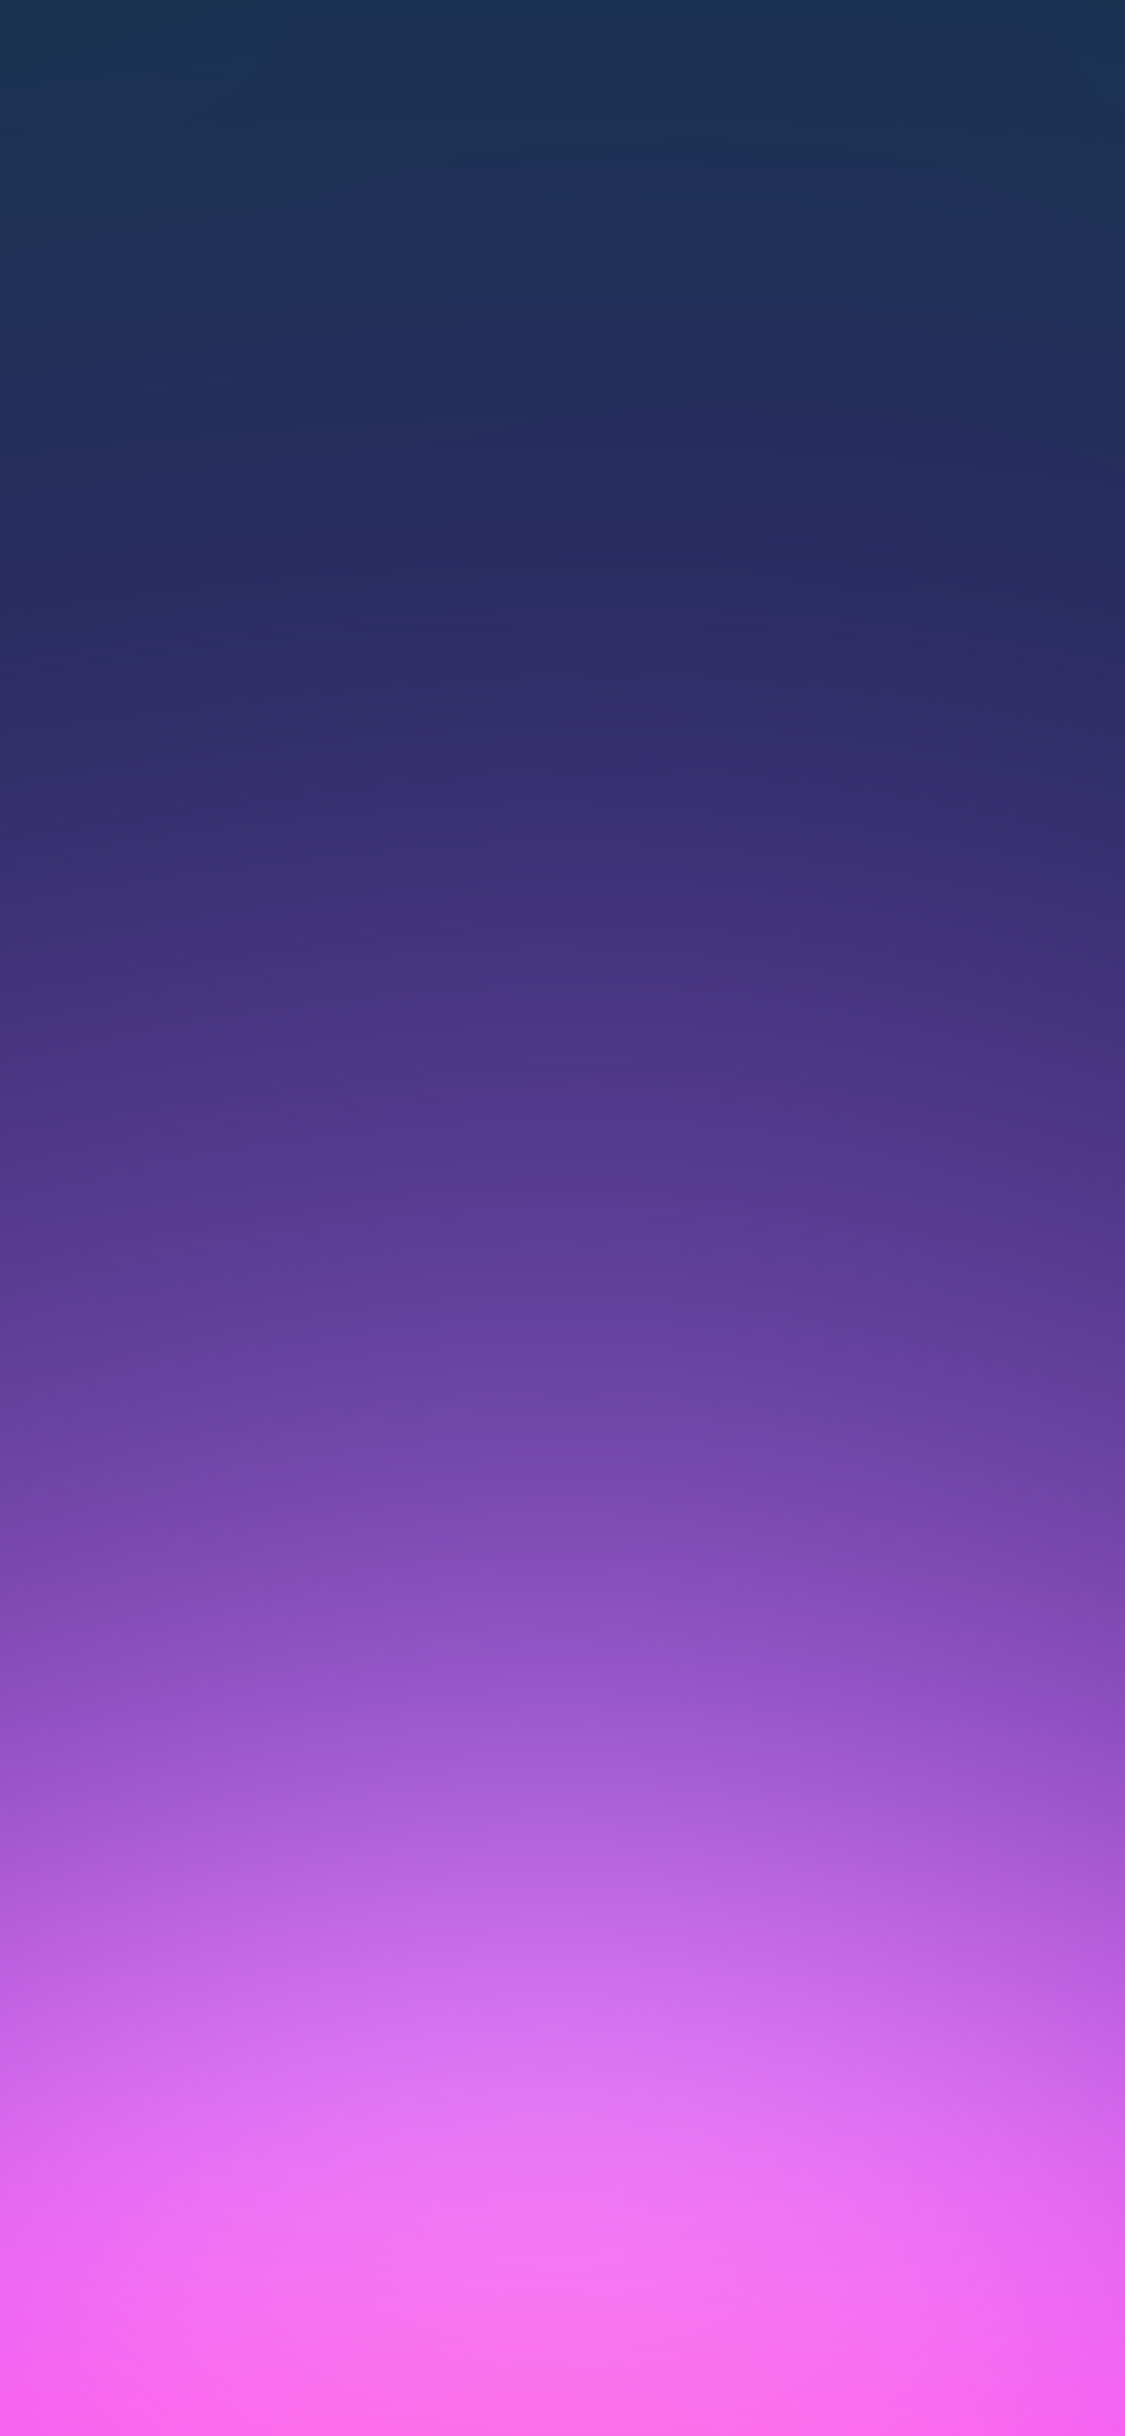 1125x2436 | iPhone11 wallpaper | sl89-purple-pink-blur-gradati